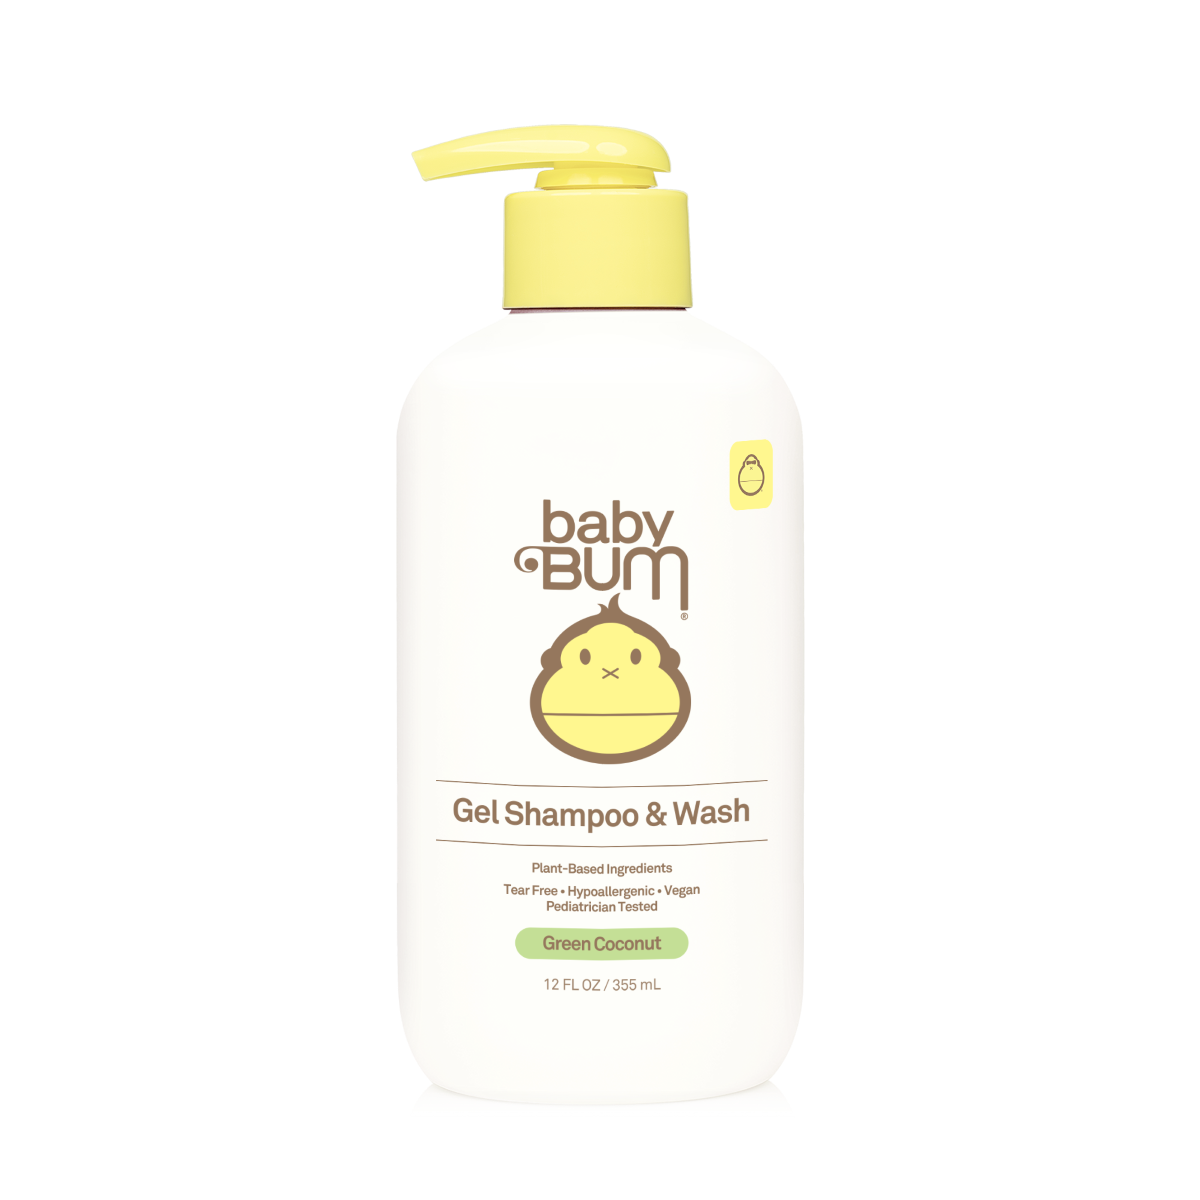 Sun Bum Baby Bum Gel Shampoo & Wash 355ml